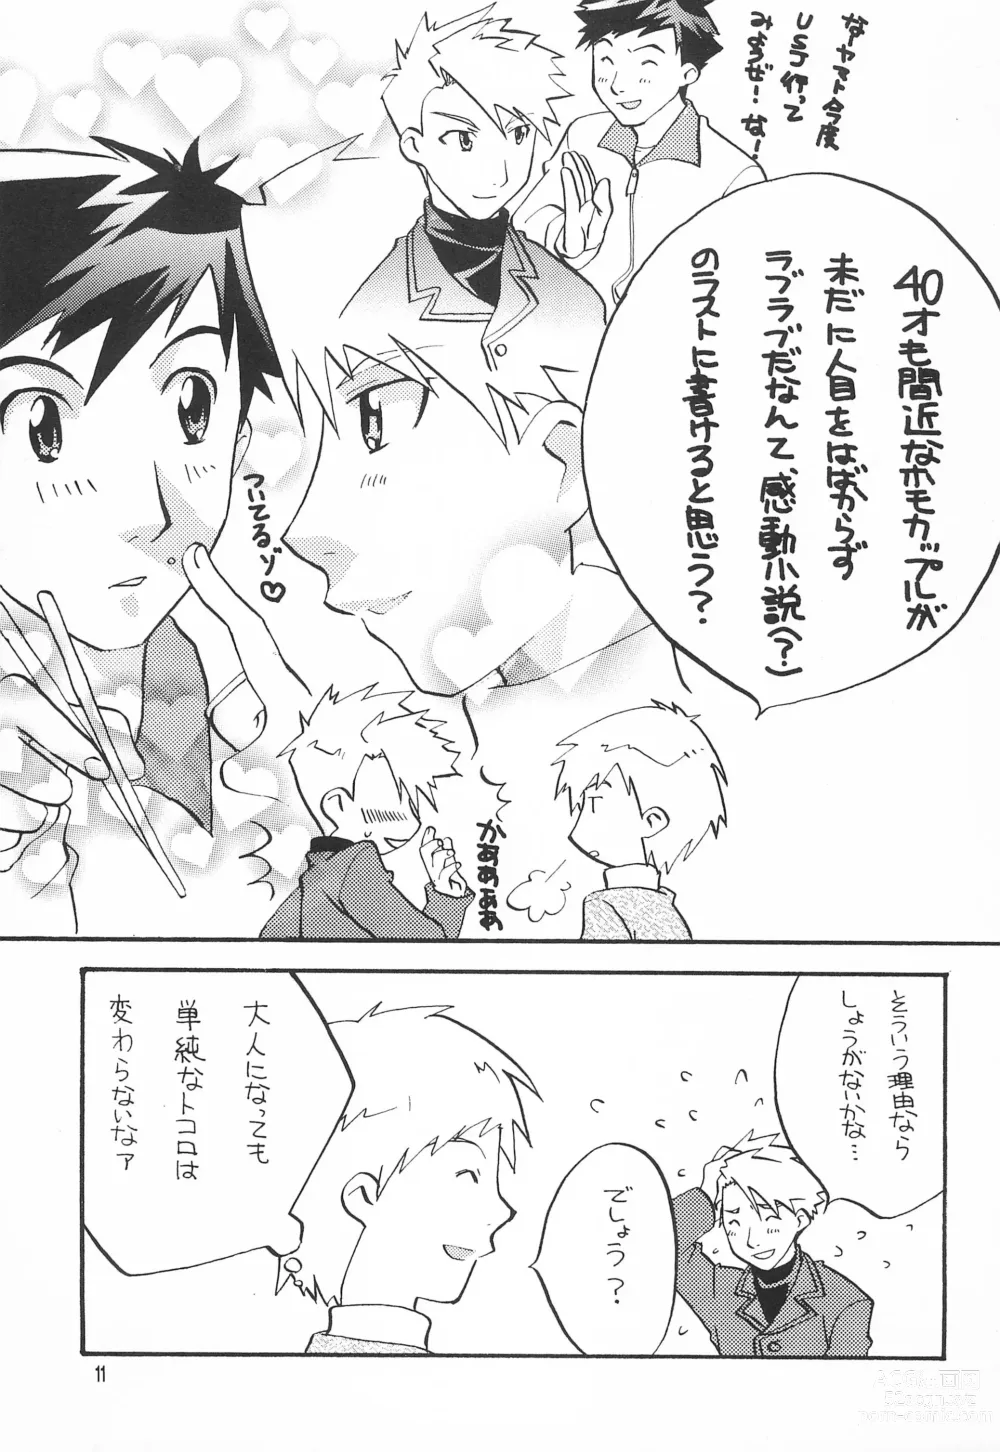 Page 13 of doujinshi Utsukushiki Samazama no Yume